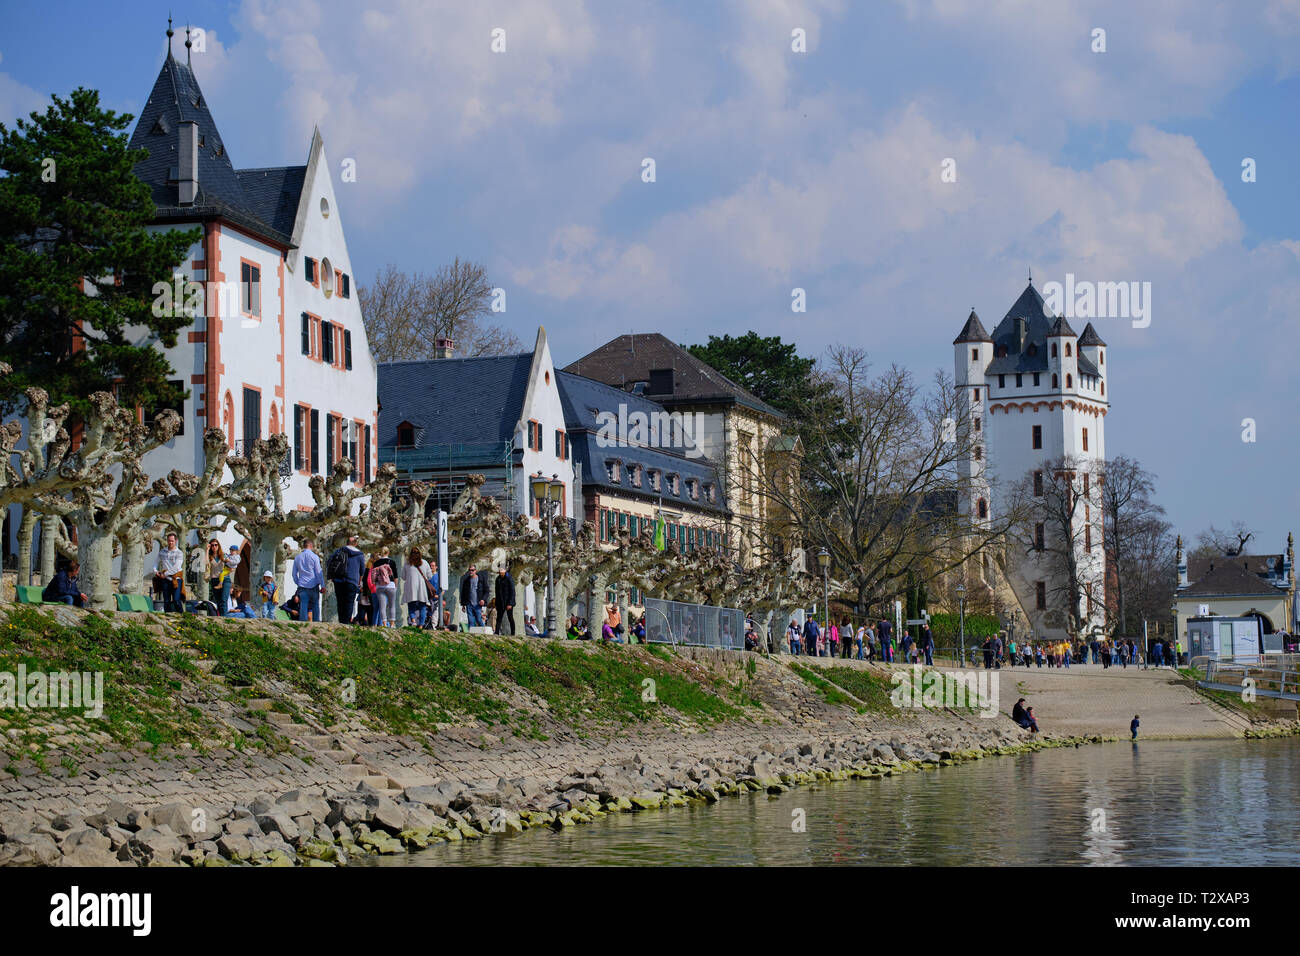 Eltville, Deutschland - 31. März 2019: River Promenade in Eltville mit Menschen an einem sonnigen Tag mit Blick auf das Schloss. Stockfoto